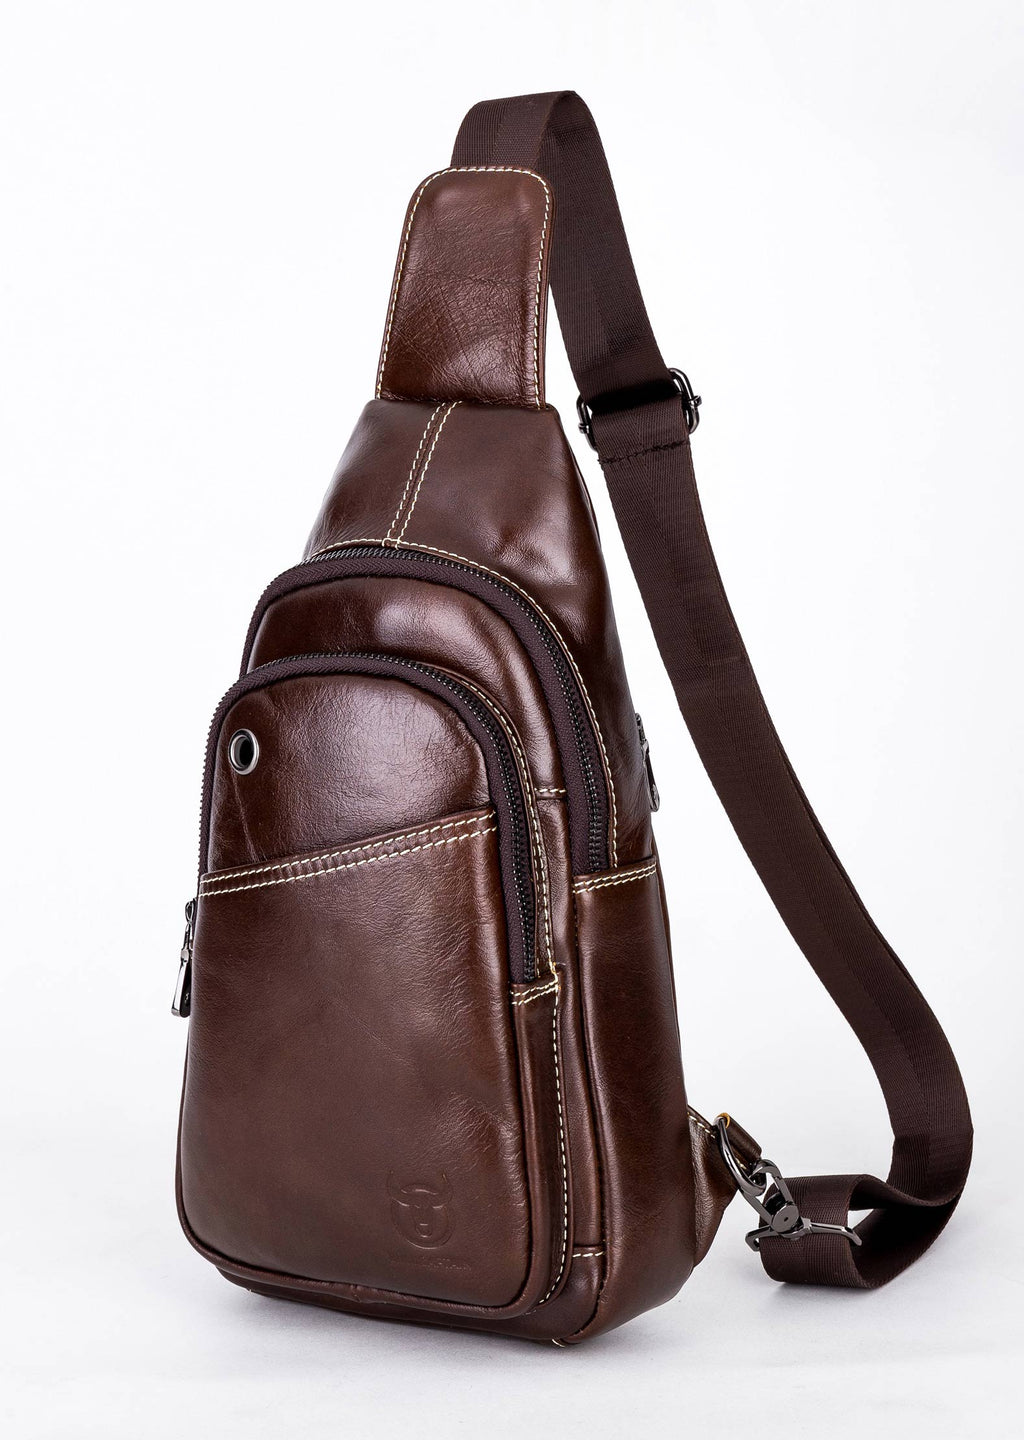 Bullcaptain Leather Sling Bag Men Chest Bag Genuine Leather Crossbody Small Sachel Bags For Men - 085